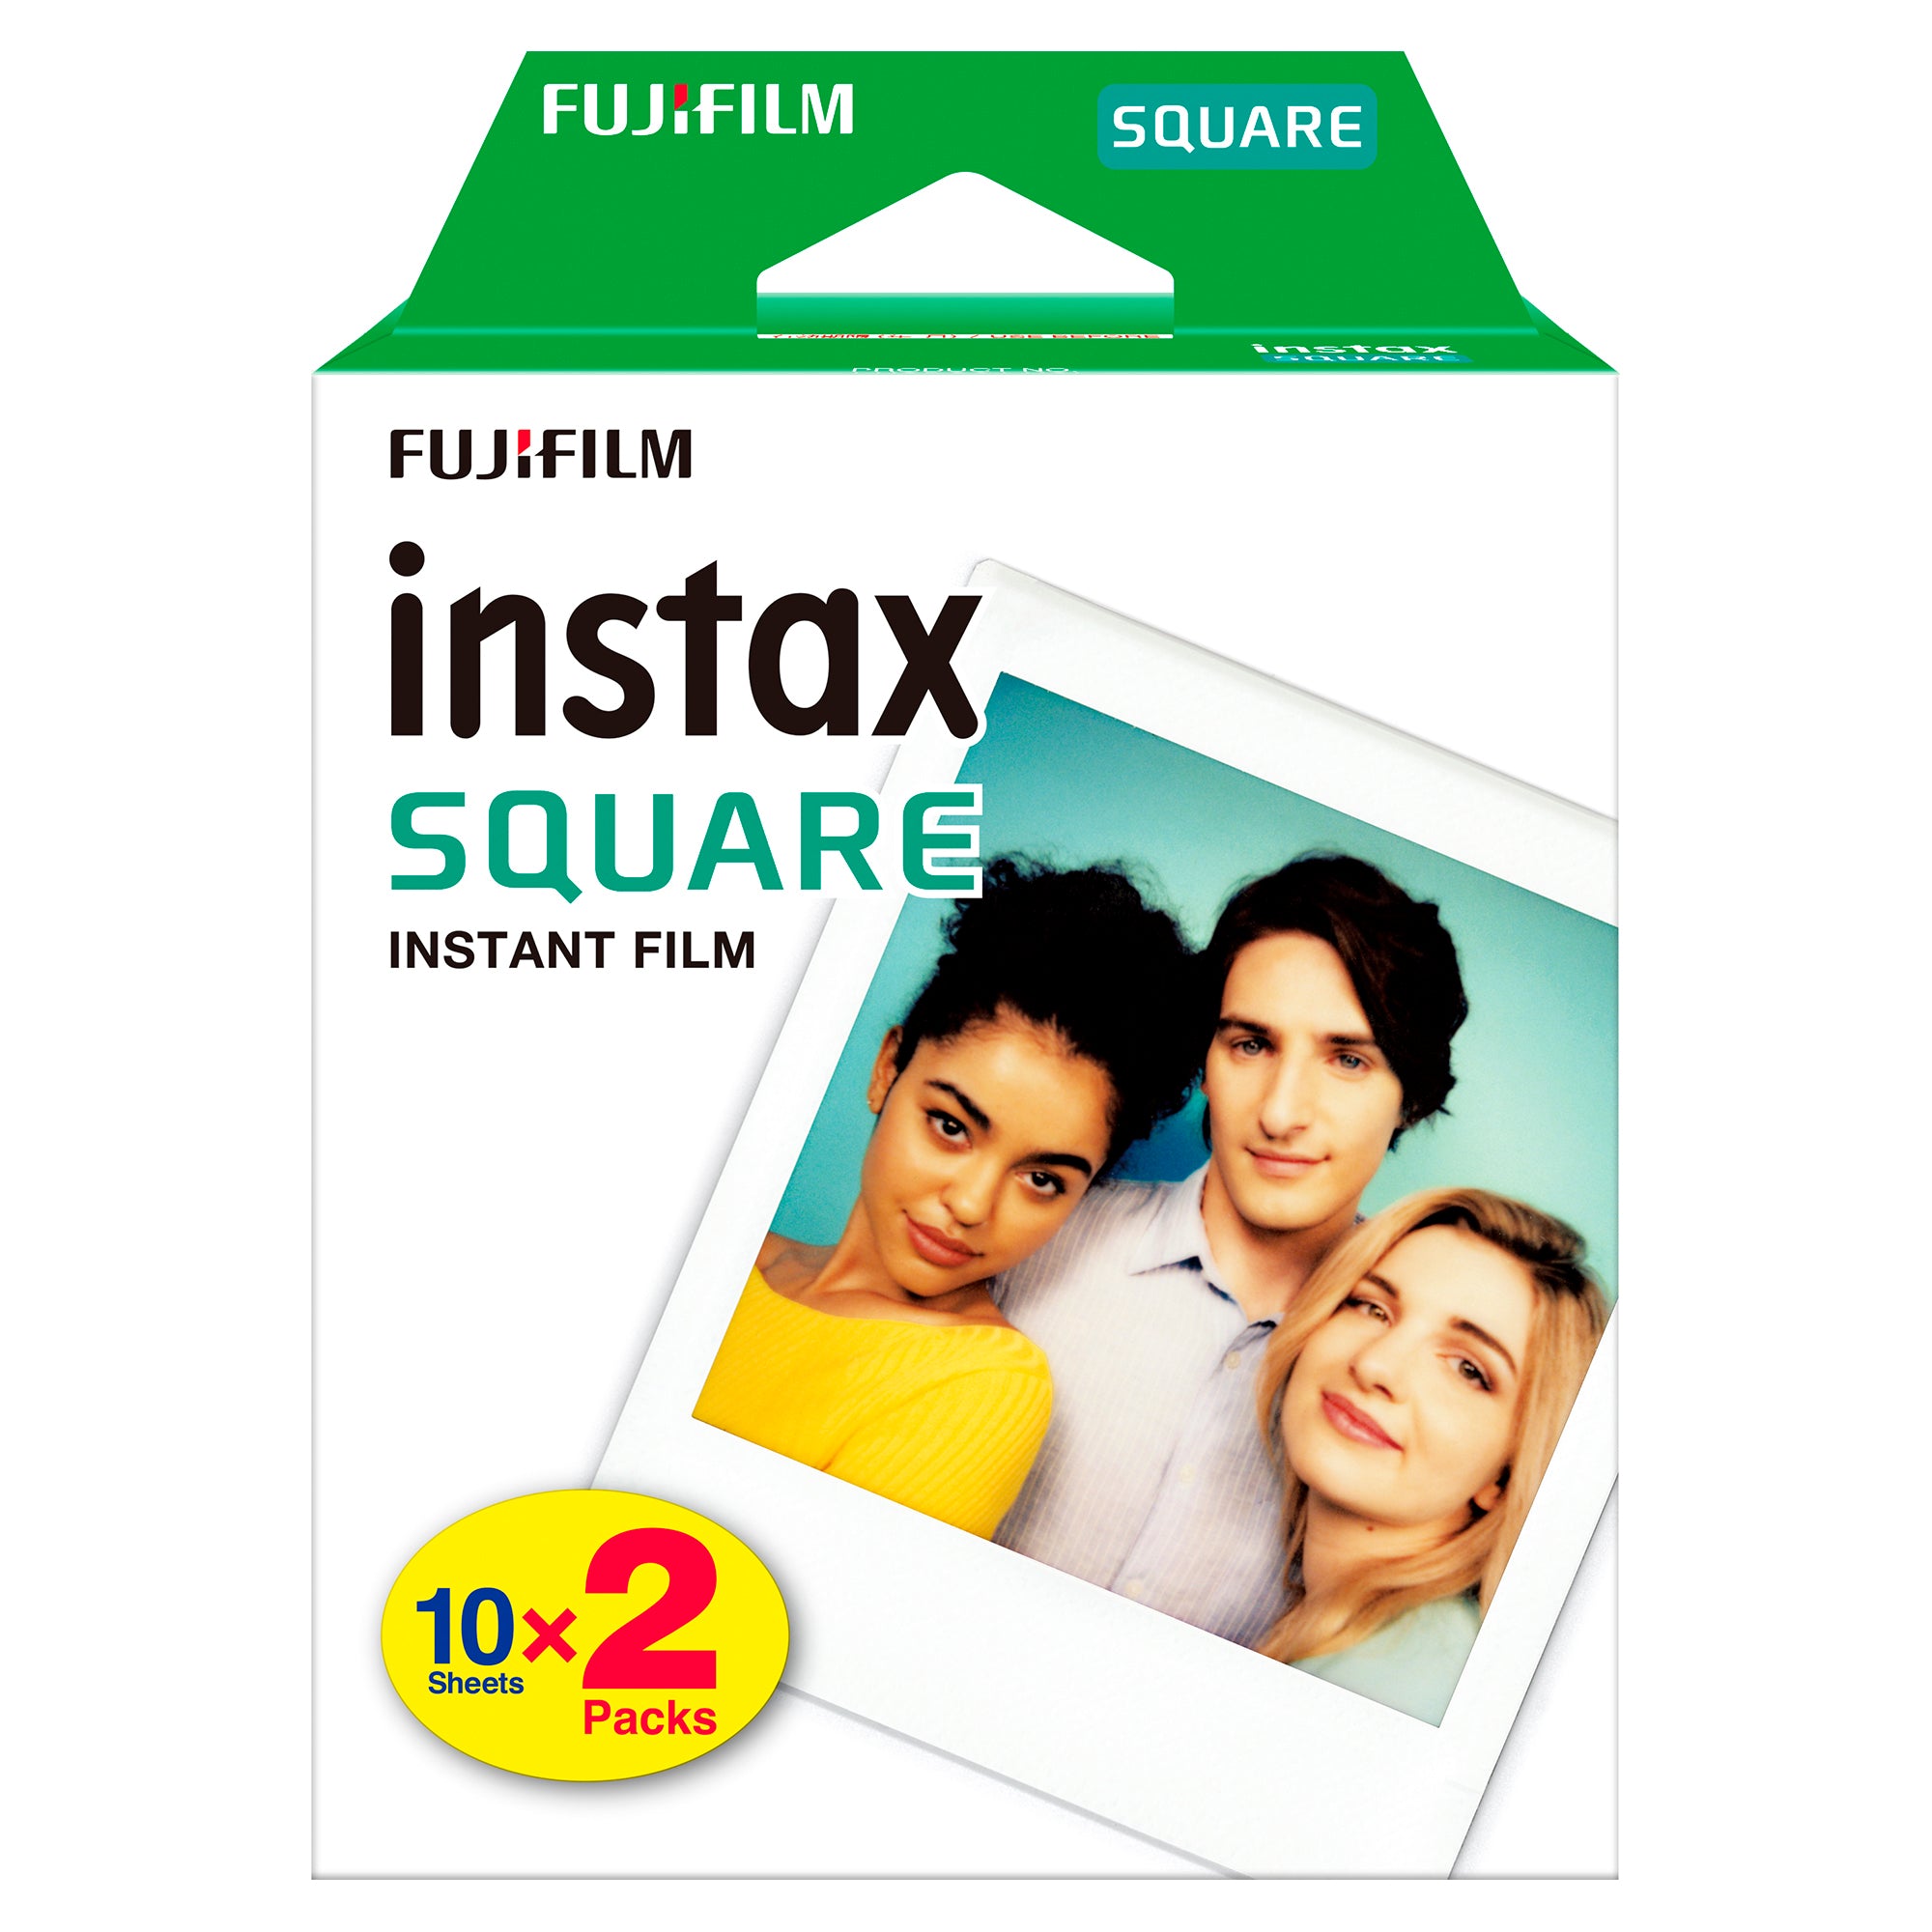 FUJIFILM INSTAX SQUARE Instant Film, instax square 